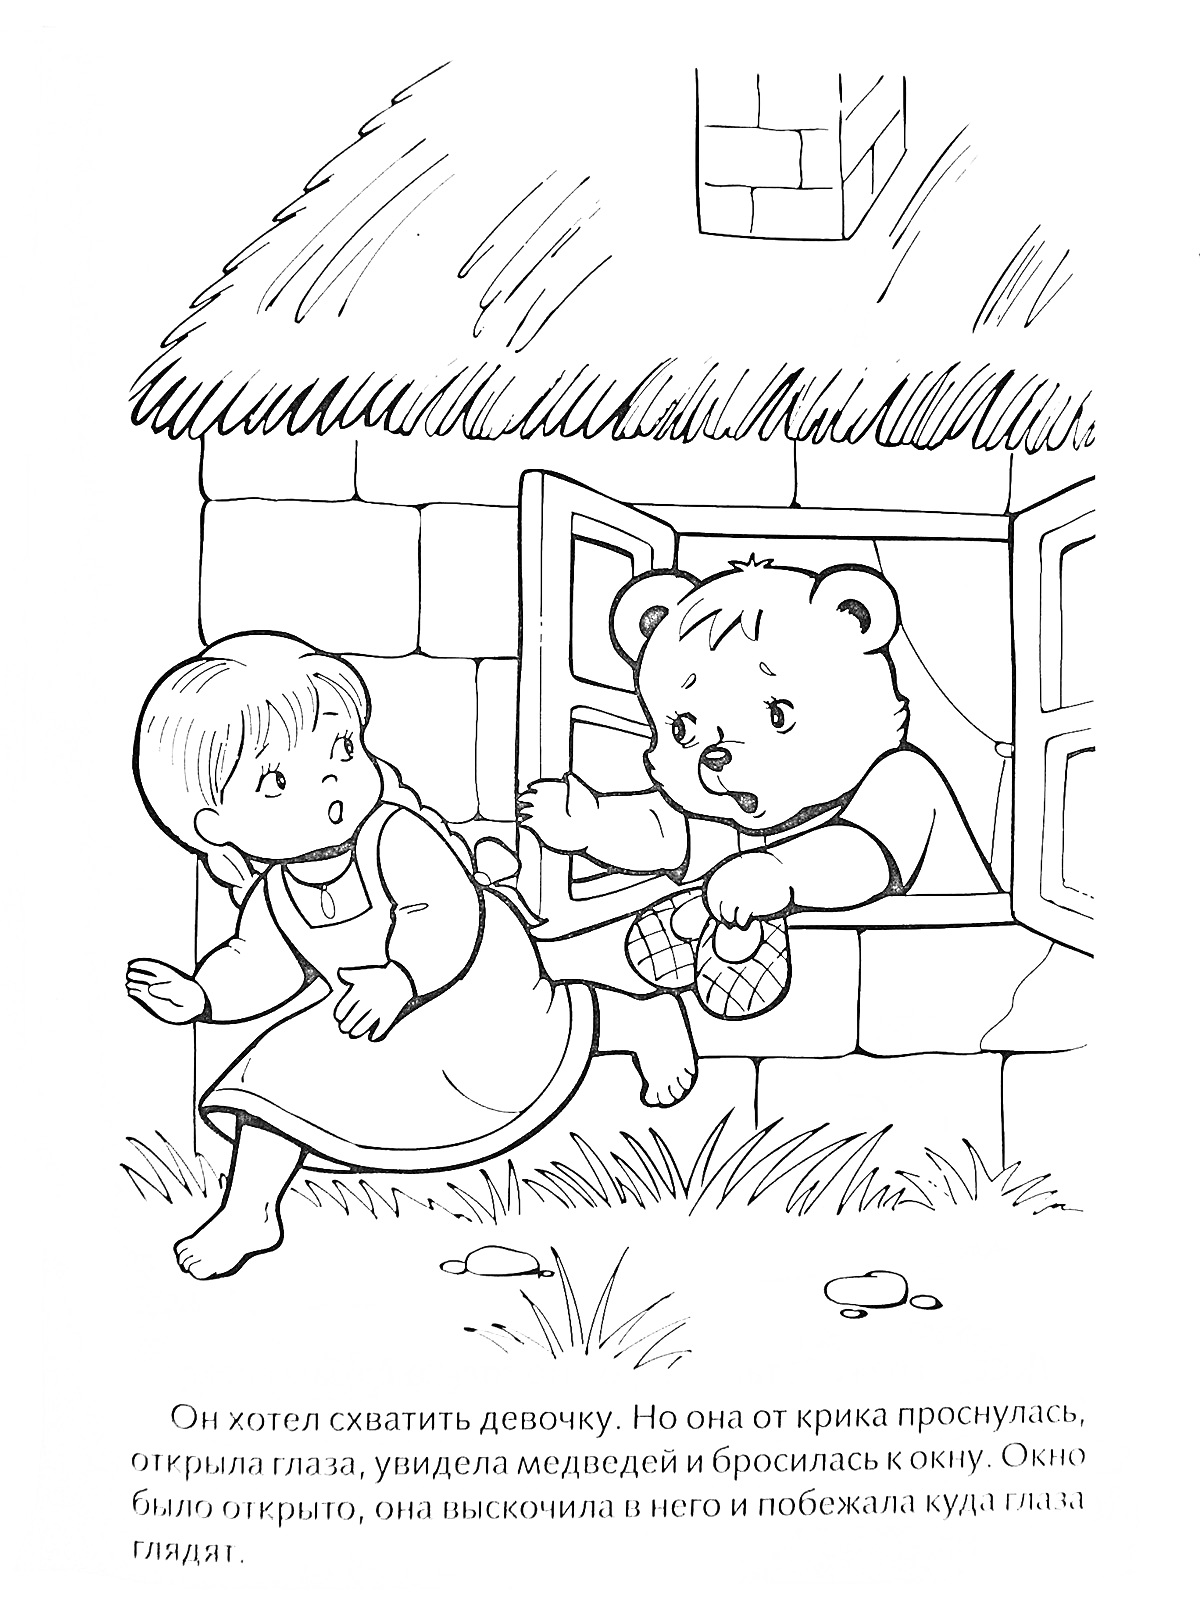 Девочка убегает из окна дома, медвежонок пытается её схватить